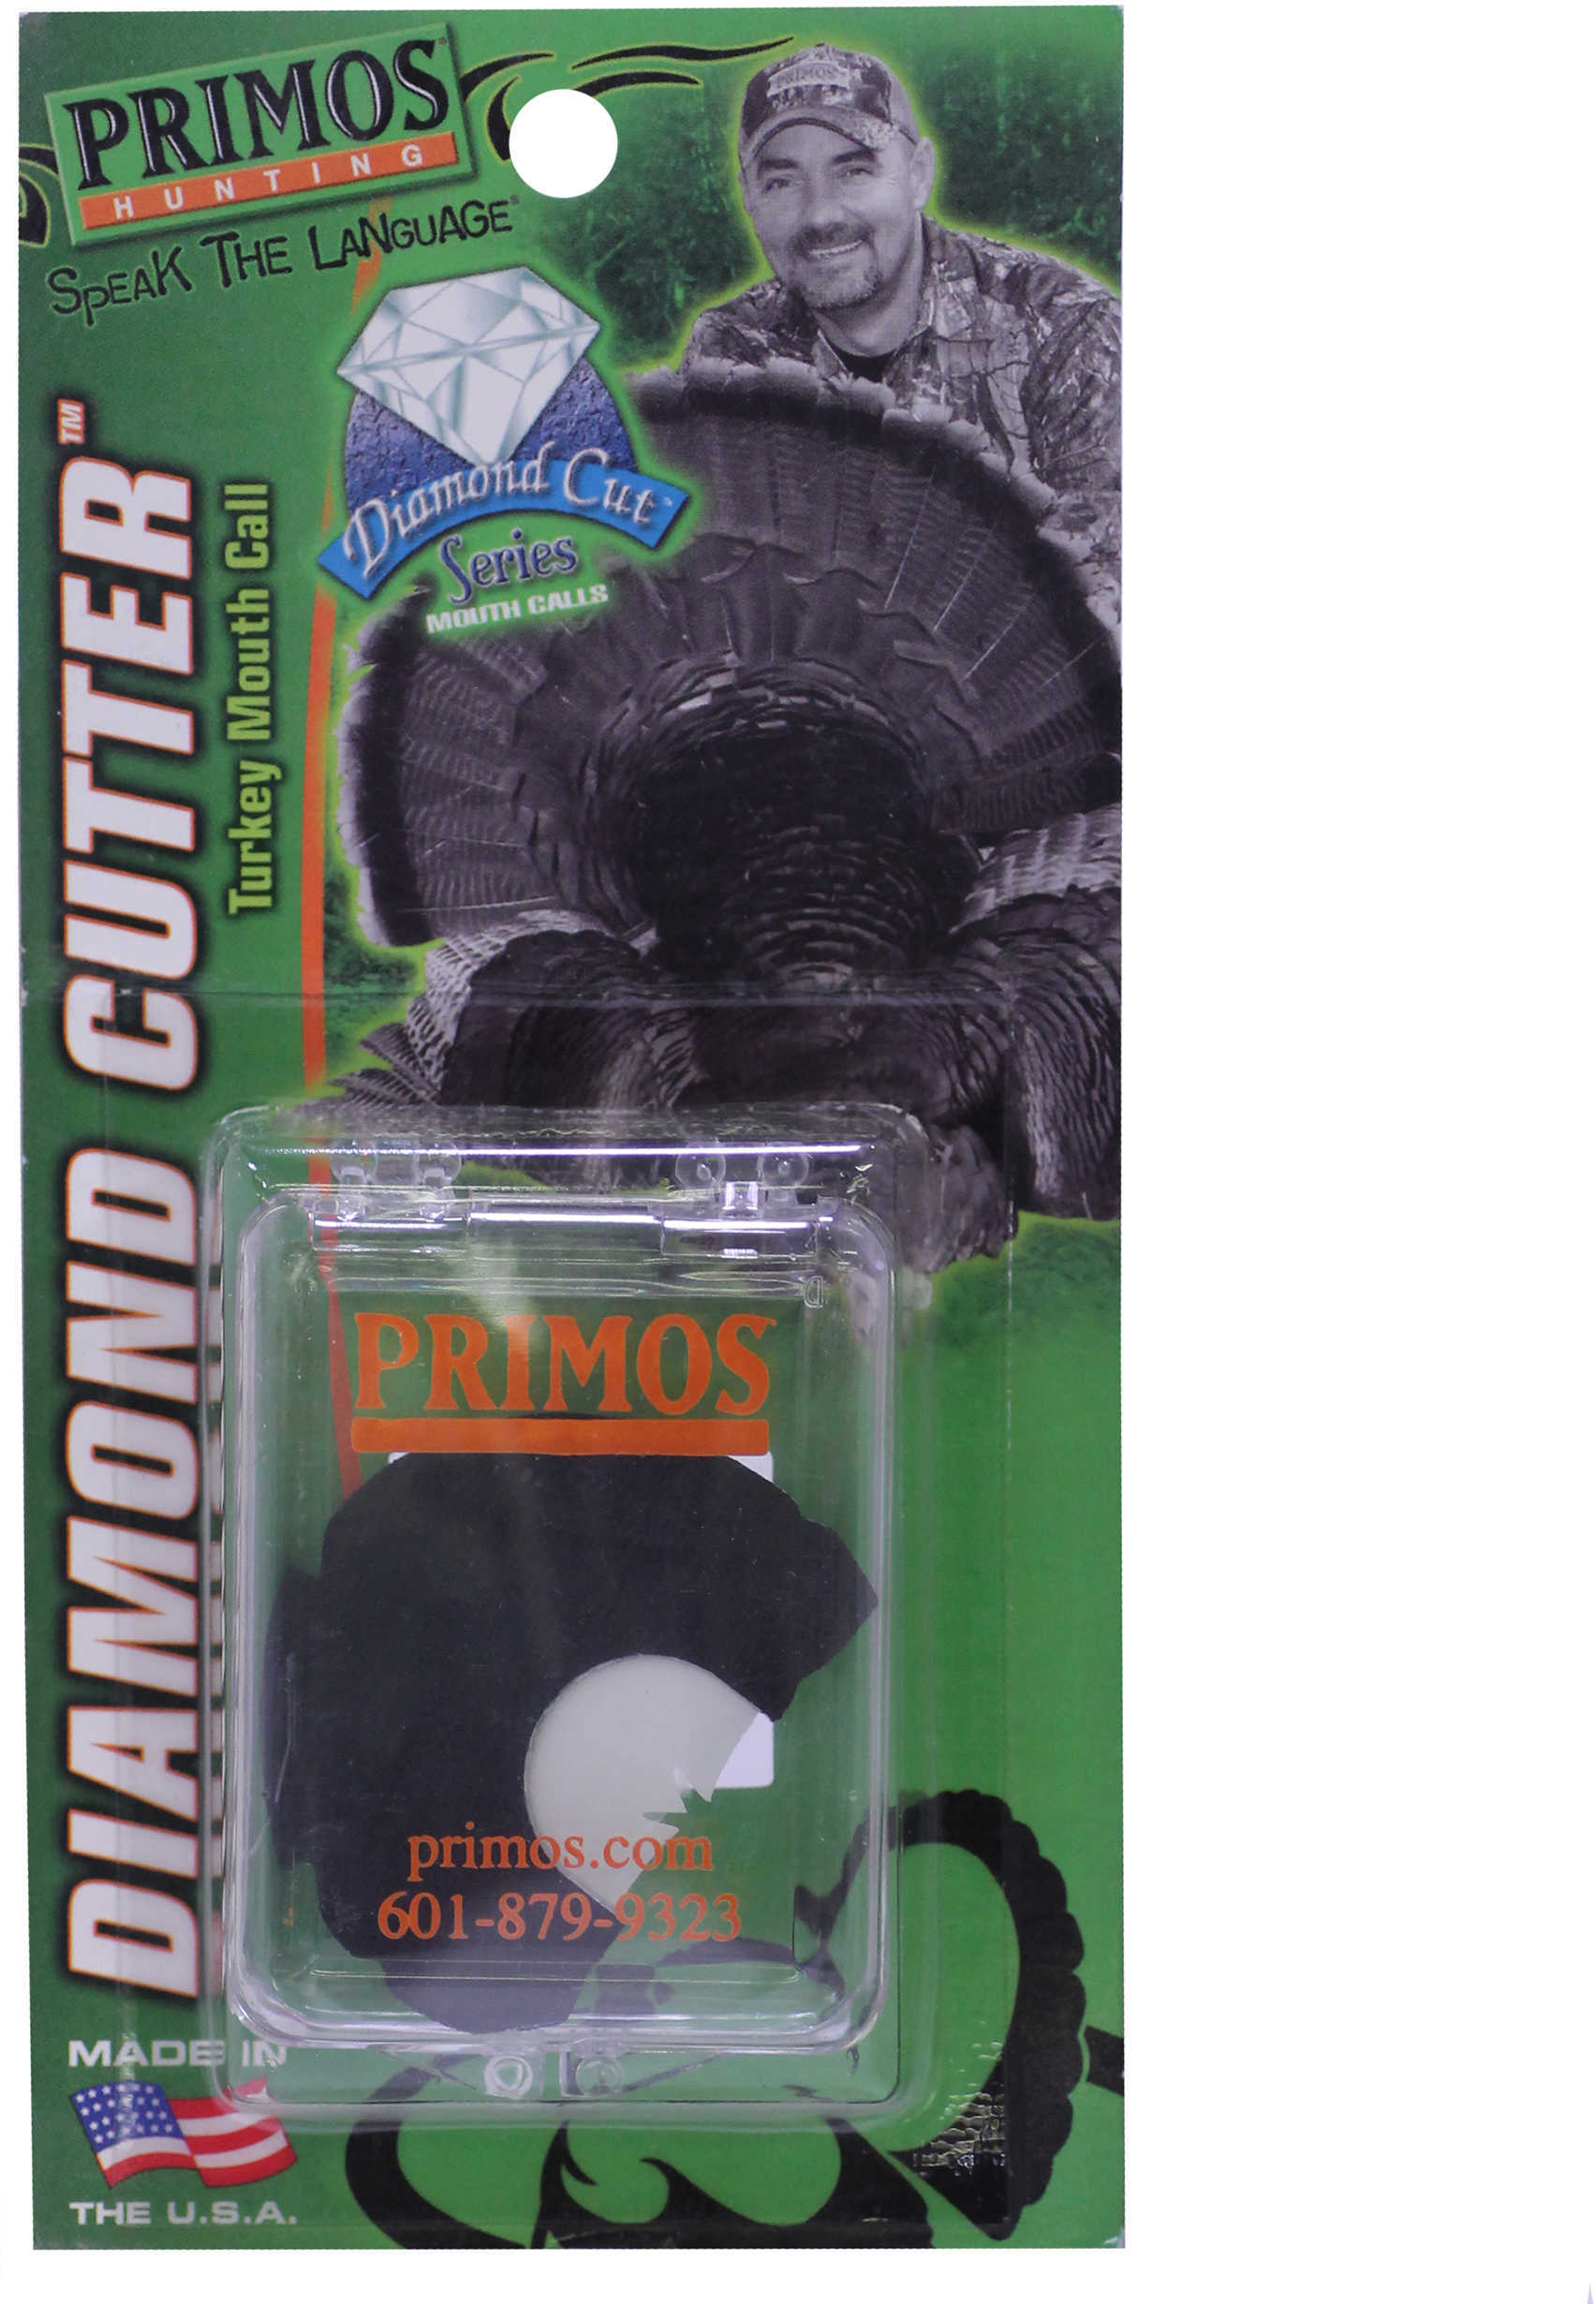 Primos Original Series Diamond Cutter Turkey Call